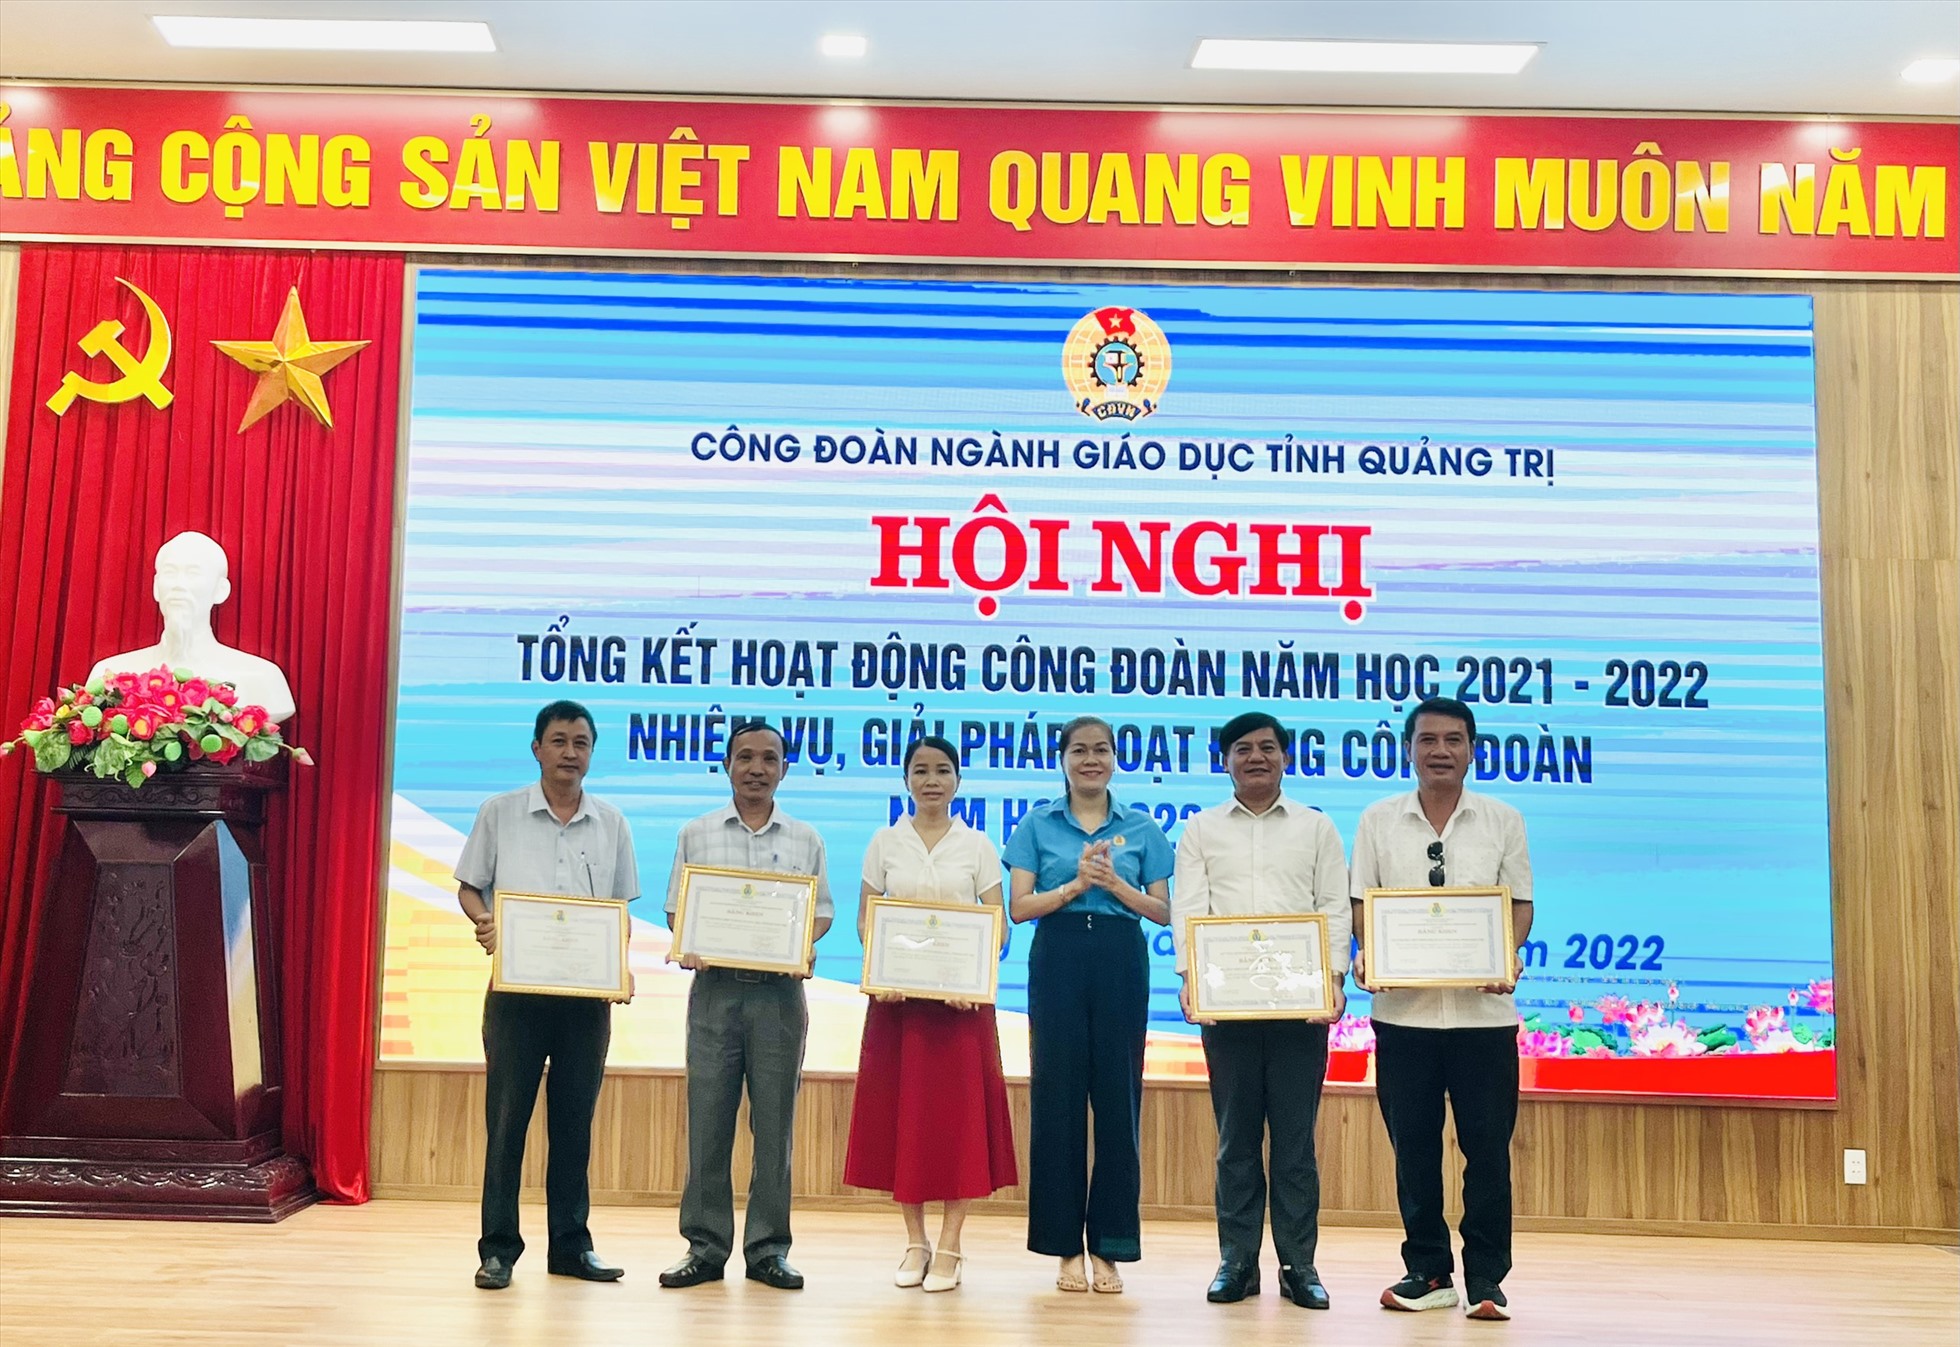 Lãnh đạo LĐLĐ tỉnh Quảng Trị trao bằng khen cho các tập thể và cá nhân có thành tích xuất sắc trong hoạt động công đoàn năm học 2021-2022. Ảnh: CĐ.